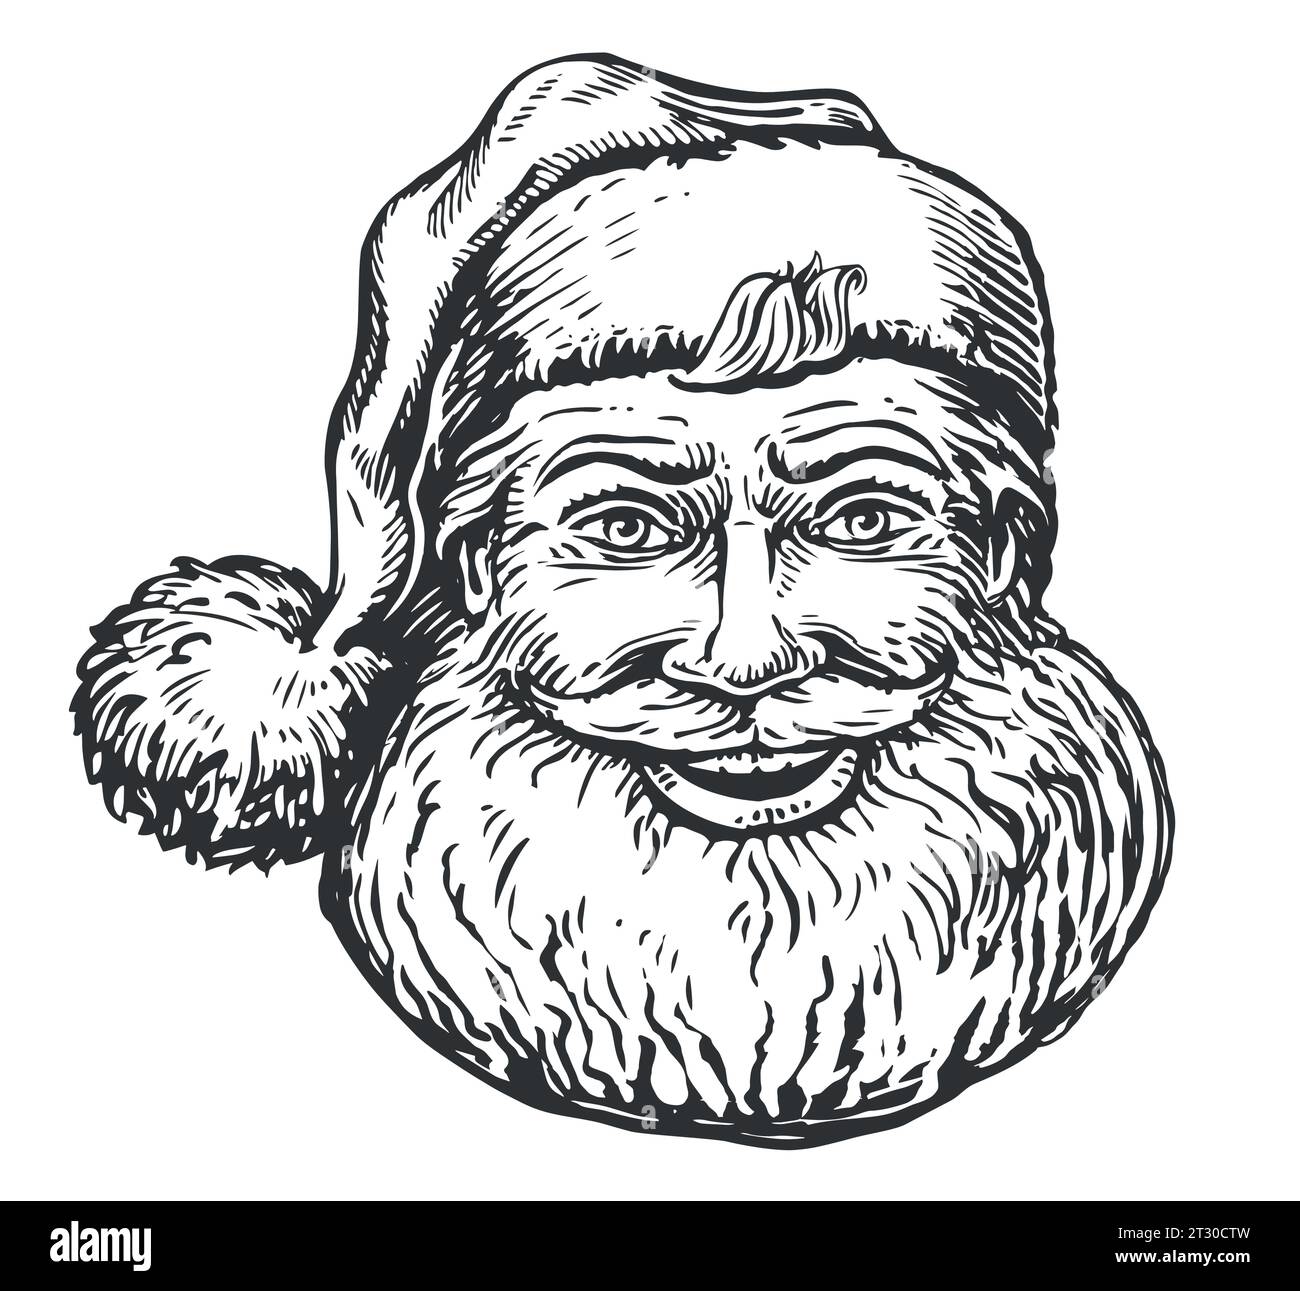 Sonriente lindo Santa Claus en sombrero dibujado a mano en estilo esbozo. Símbolo de Navidad ilustración vectorial vintage Ilustración del Vector